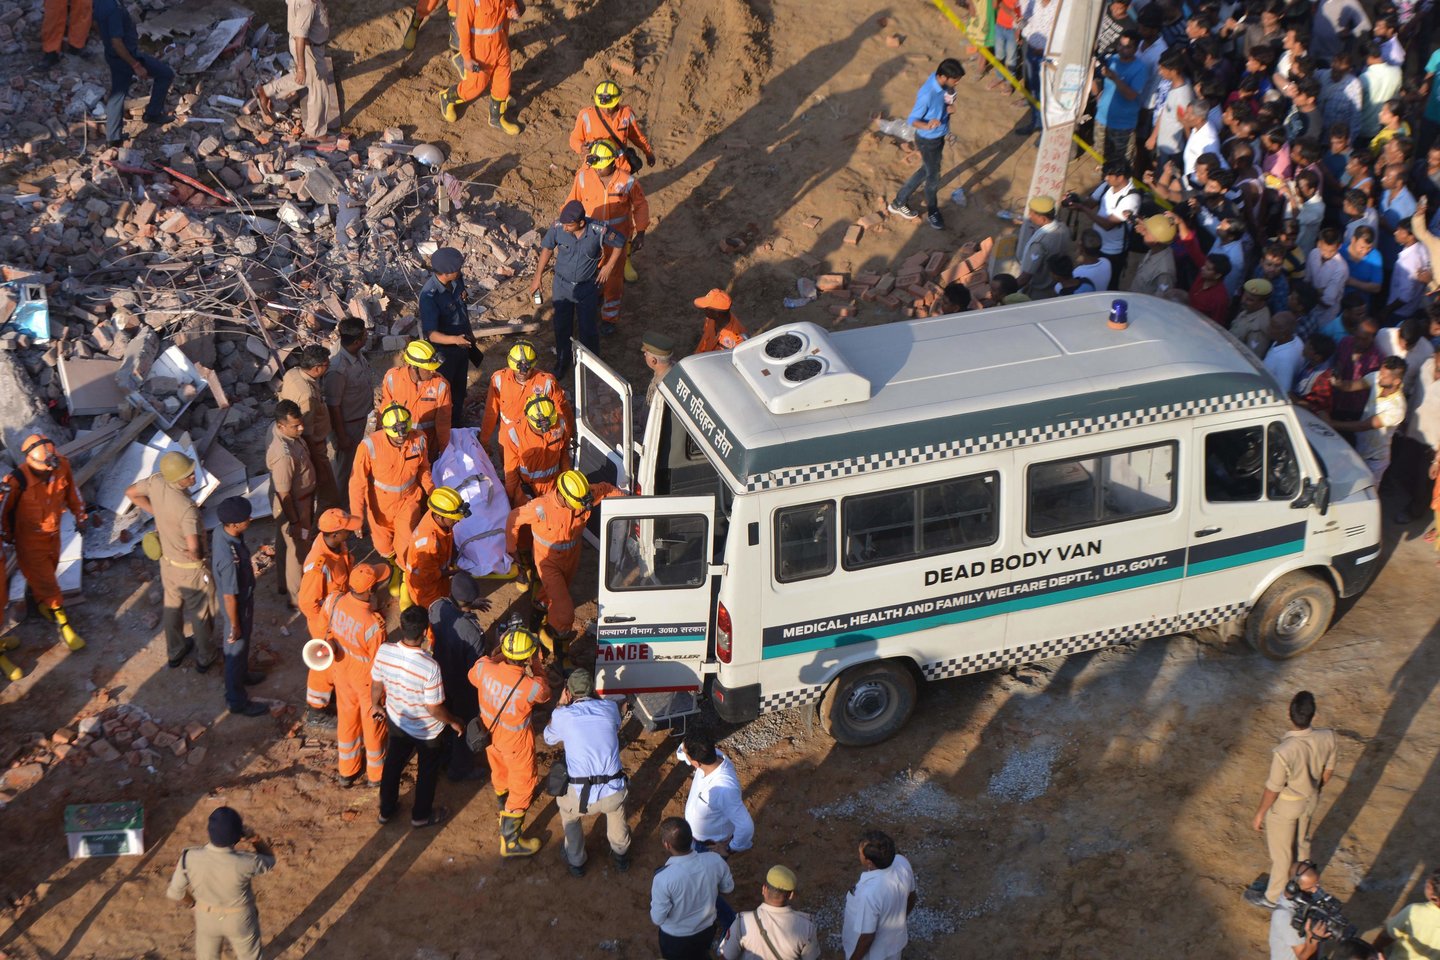  Netoli Indijos sostinės Delio ant gyvenamojo komplekso užgriuvus dar tik statytam pastatui žuvo mažiausiai trys žmonės, trečiadienį pranešė pareigūnai.<br> AFP/Scanpix nuotr.